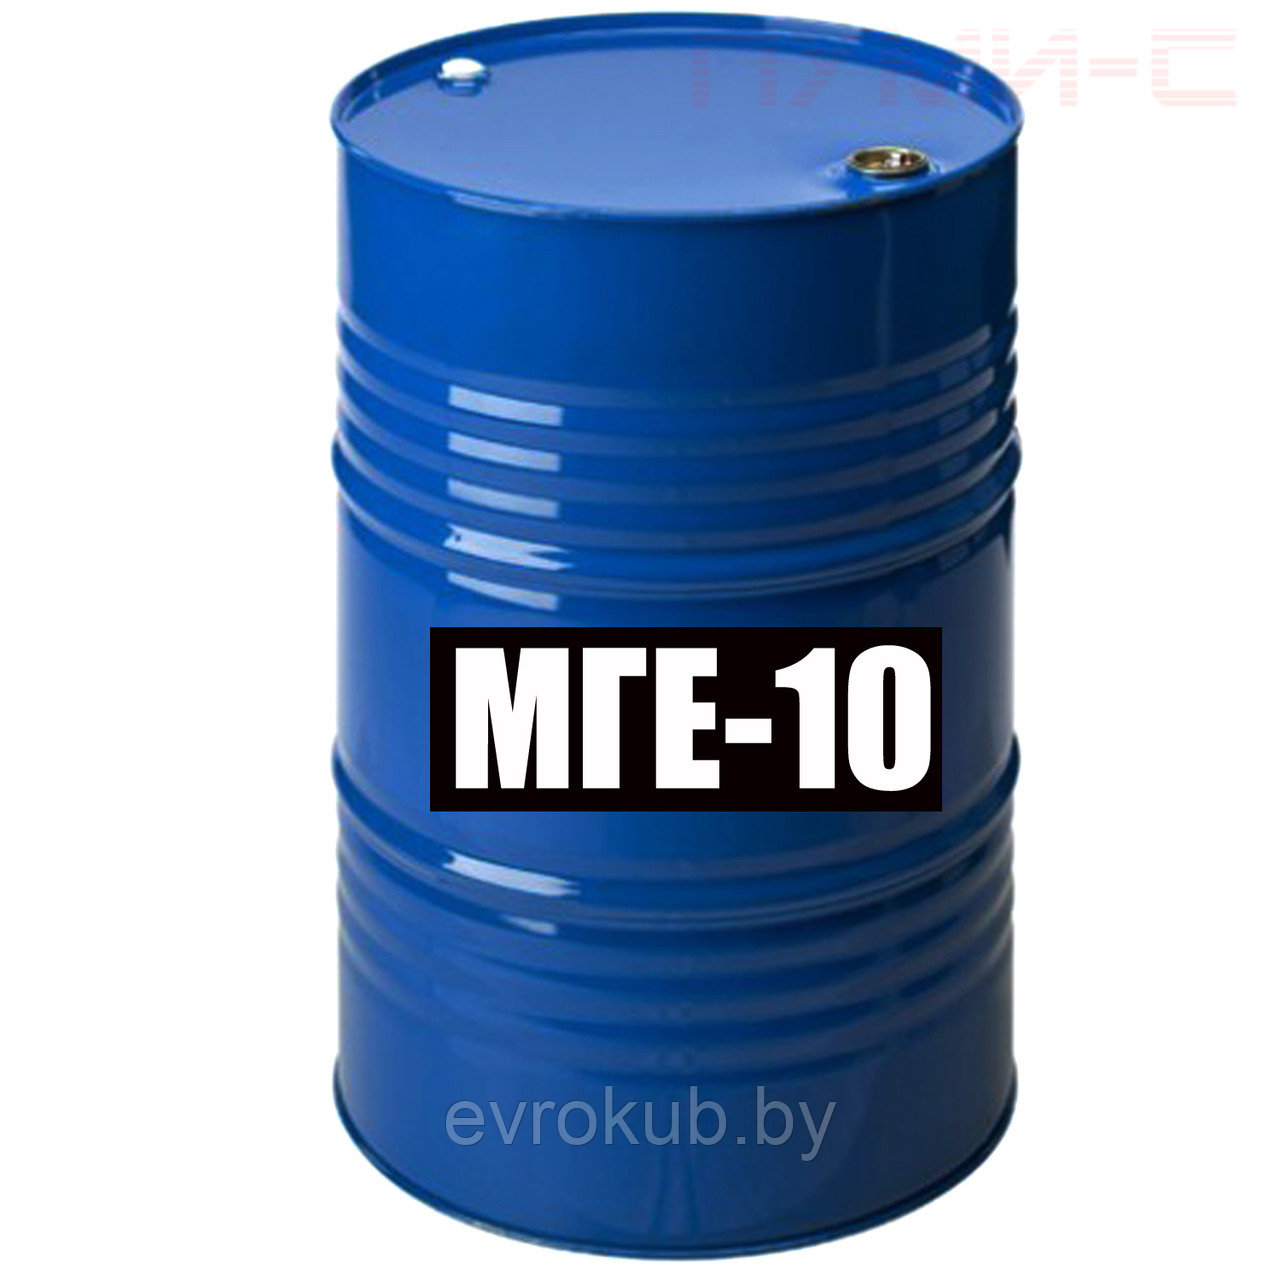 Гидравлическое масло МГЕ-10А